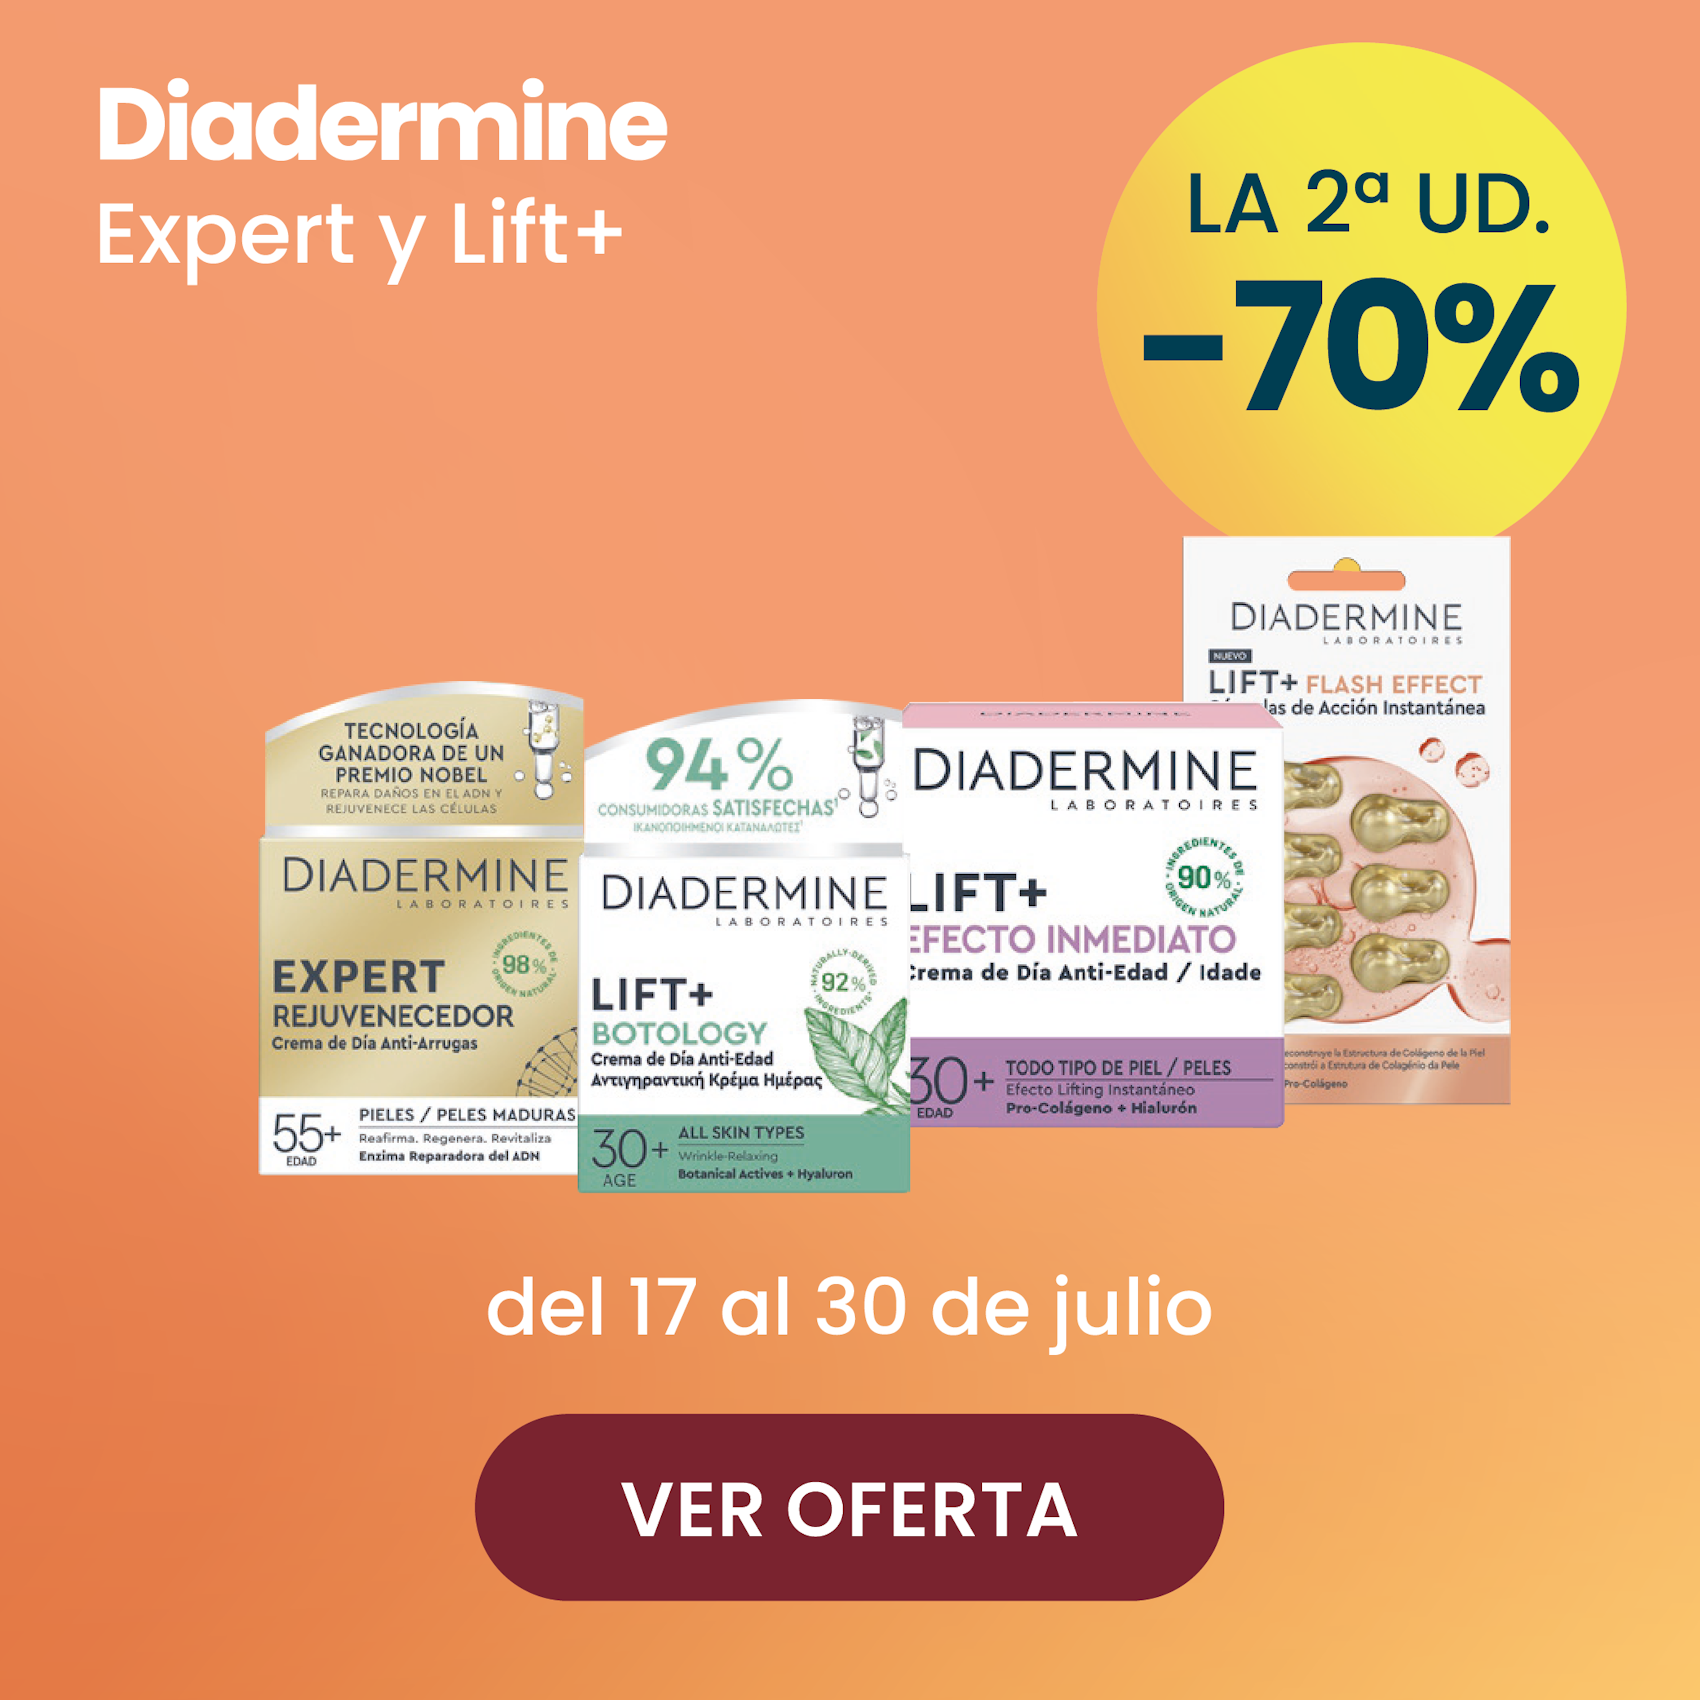 DIADERMINE EXPERT Y LIFT TODA LA GAMA -70% la 2ª ud.